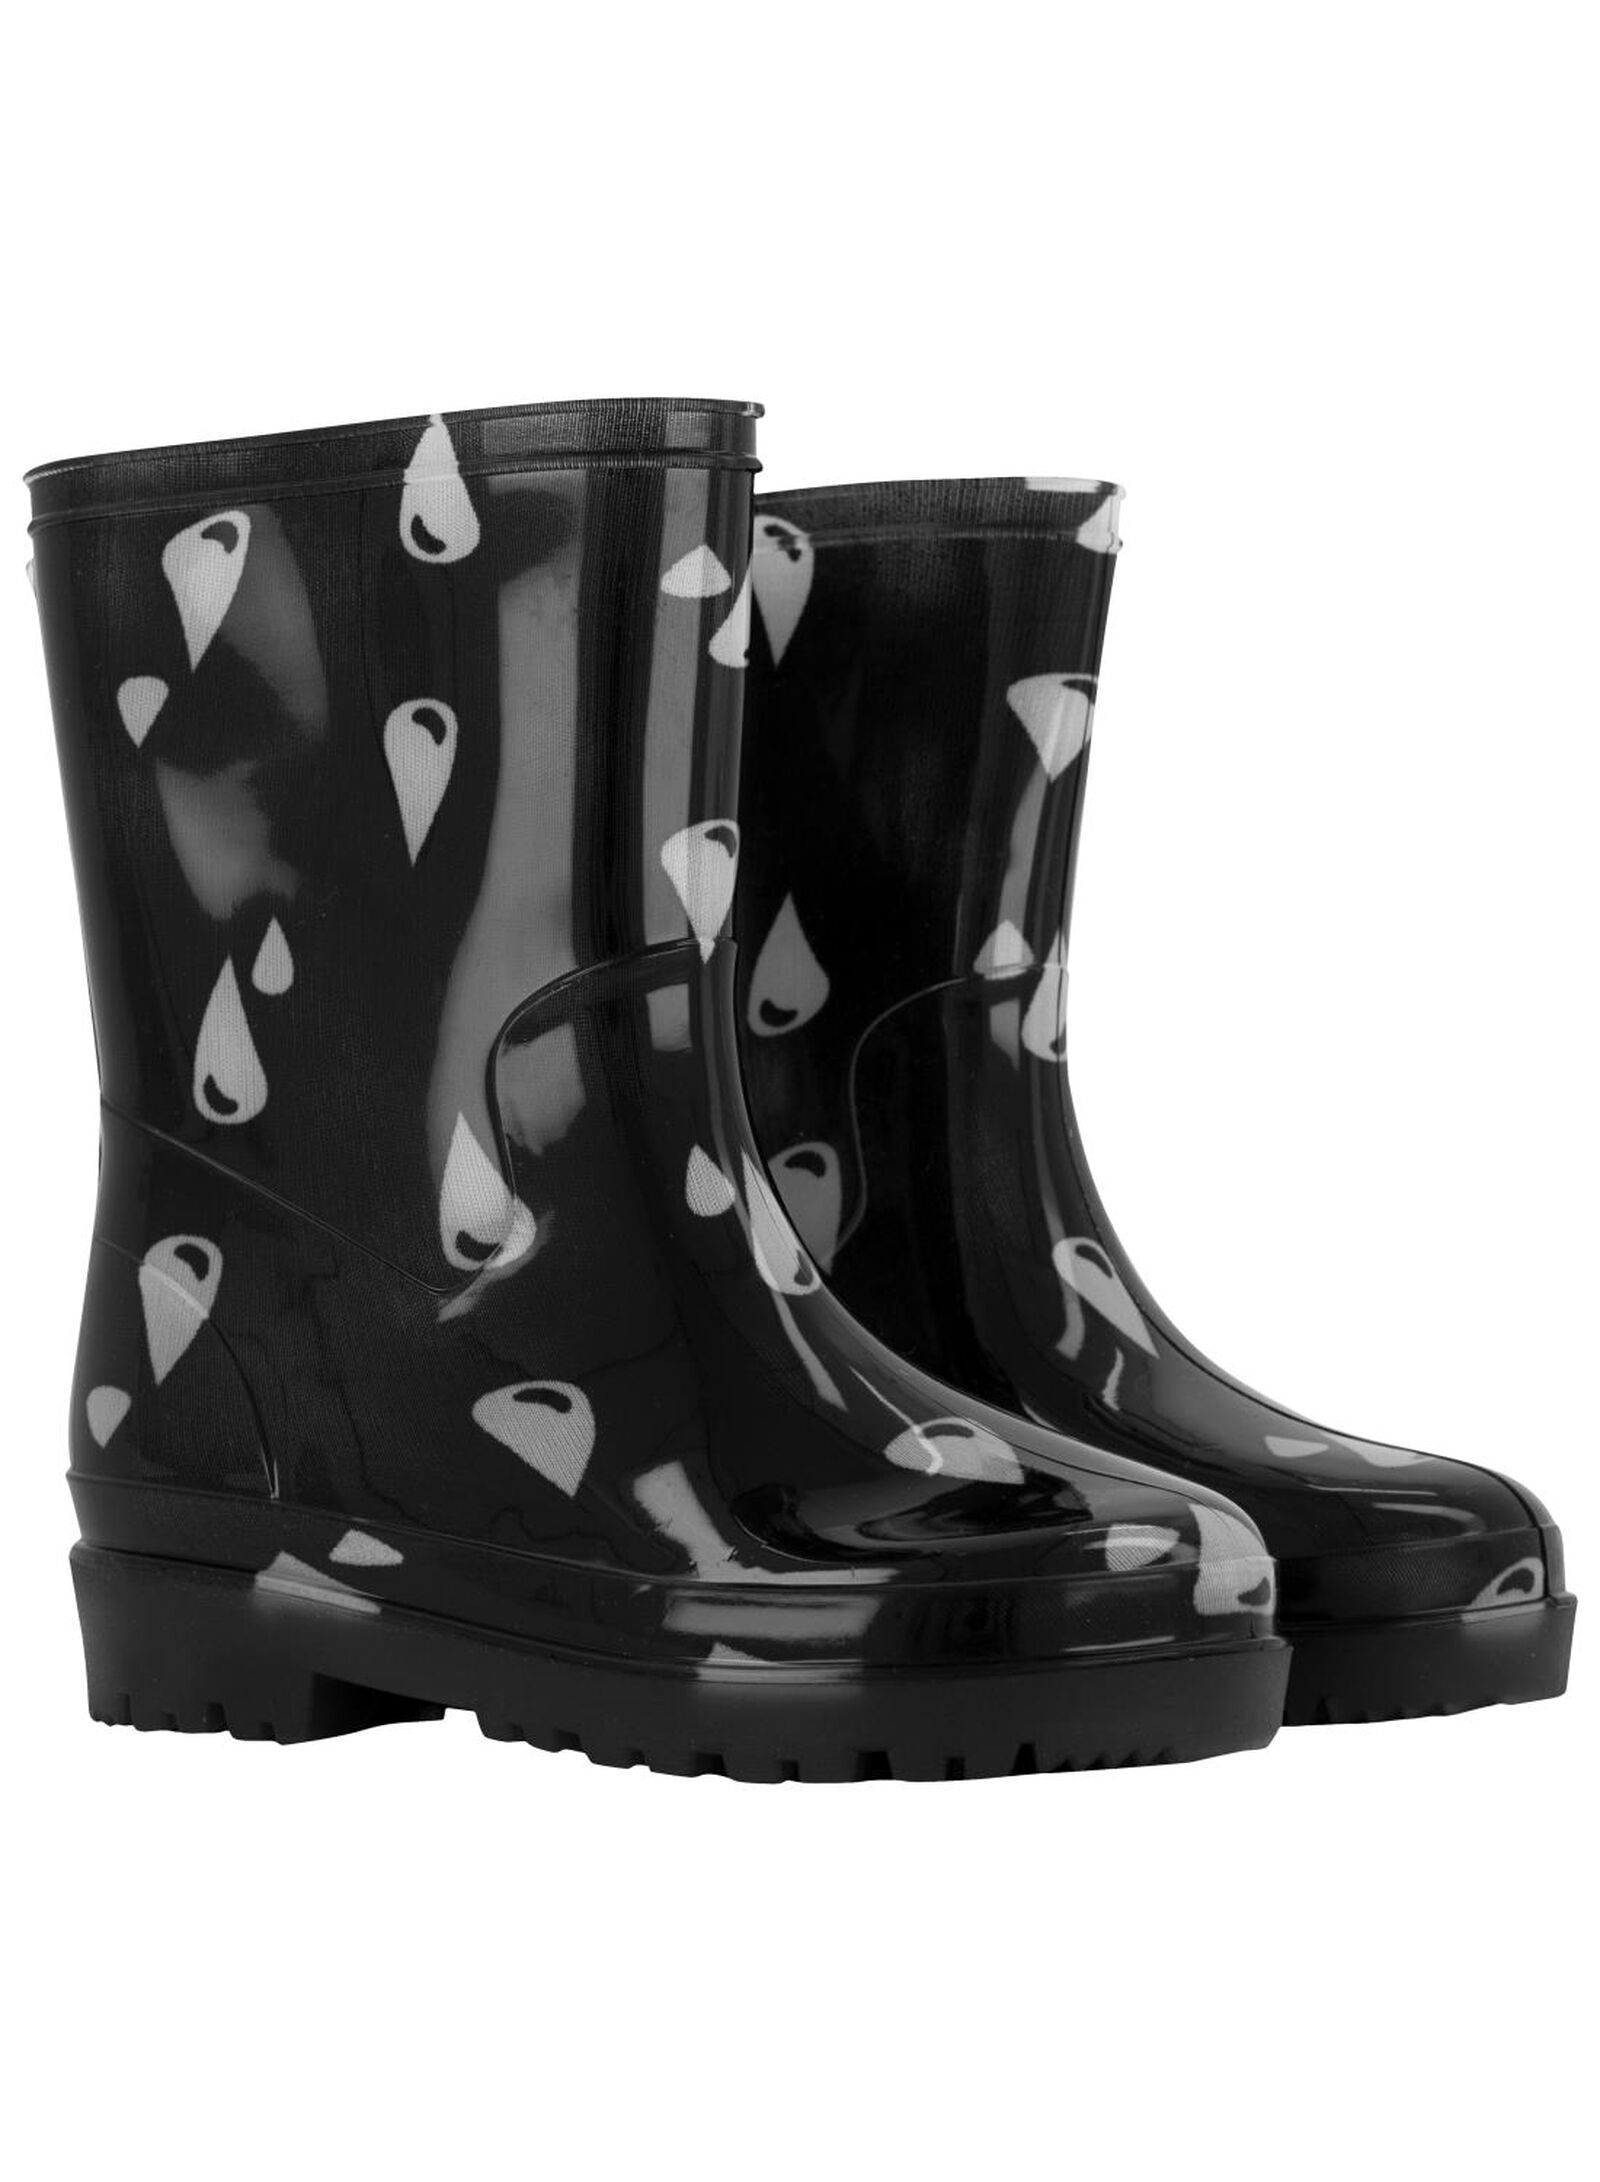 bottes de neige enfant etanches - boatilus noir bottes de pluie et  apres-ski promos